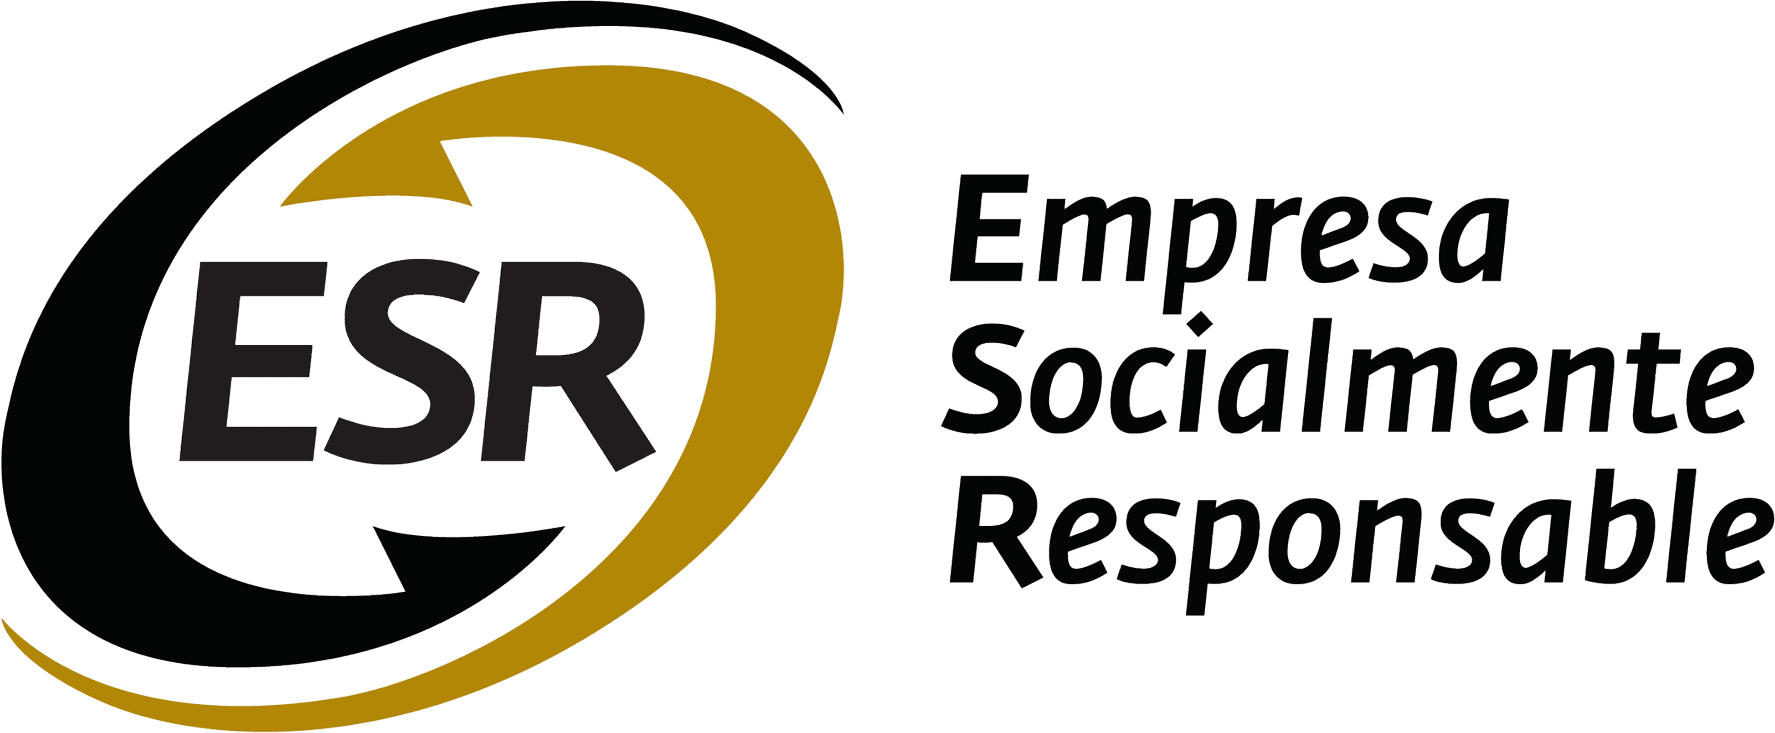 Certificación Empresa Socialmente Responsable